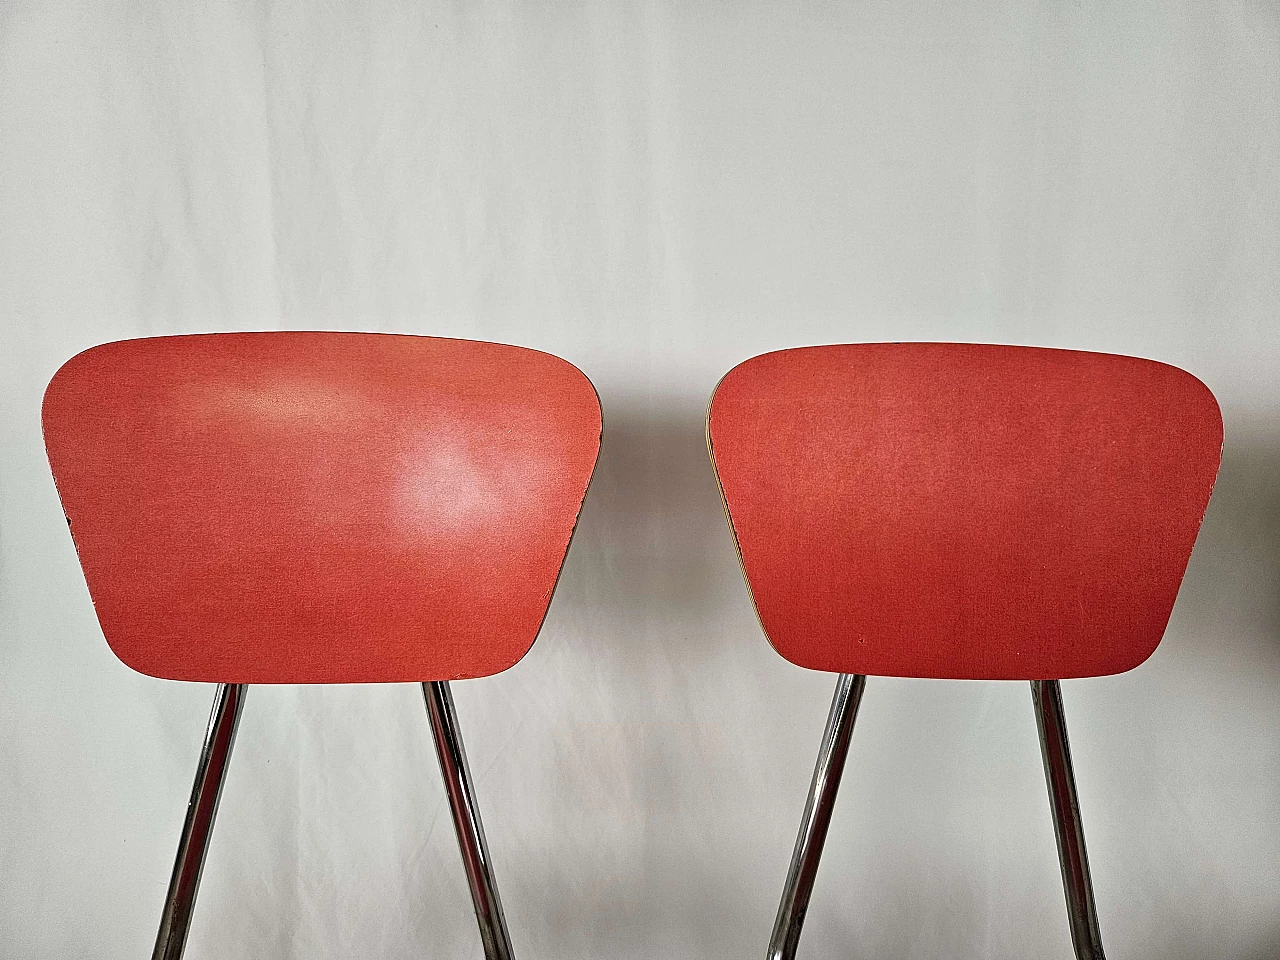 4 Sedie e tavolo in formica rossa con struttura in ferro, anni '70 24